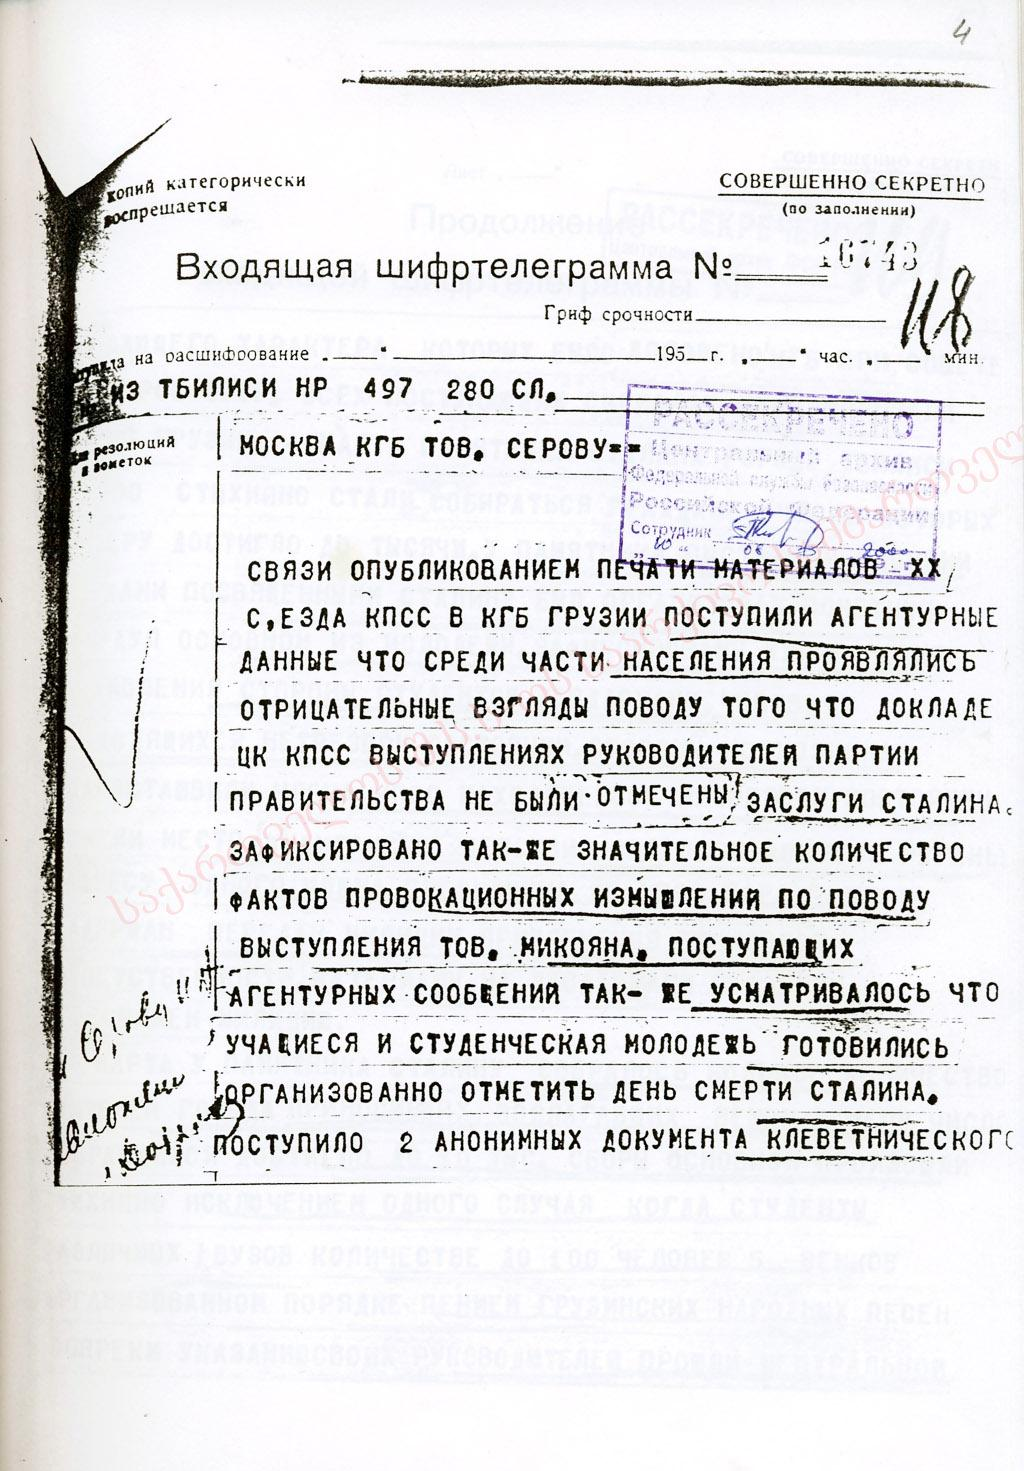 Входящие шифрованные телеграммы, рассекреченные ФСБ Российской Федерации, о событиях 5-9 марта 1956 г. Шифртелеграмма № 16743 от 6 марта 1956 г.